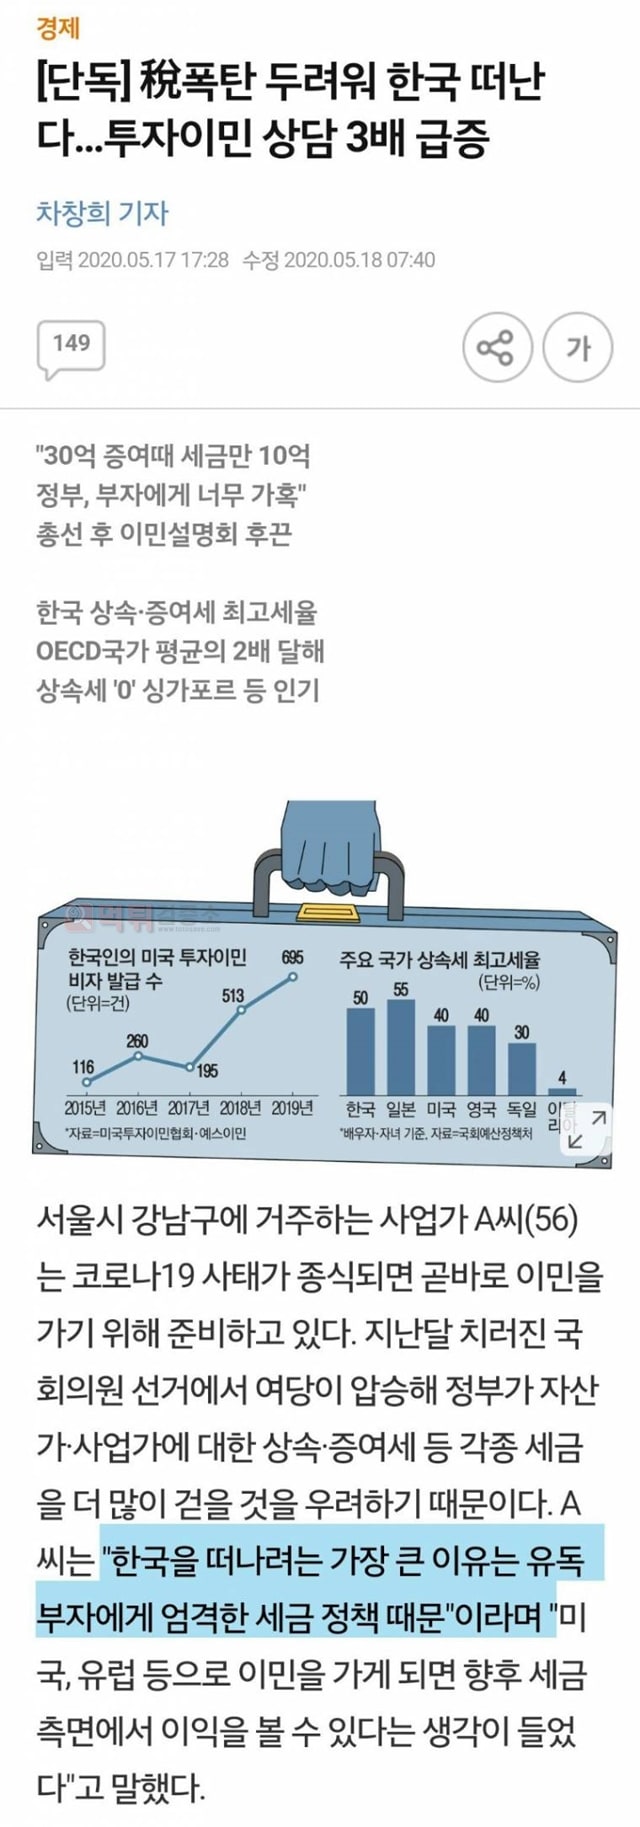 먹튀검증소 유머 세금 폭탄 두려워 한국 떠난다